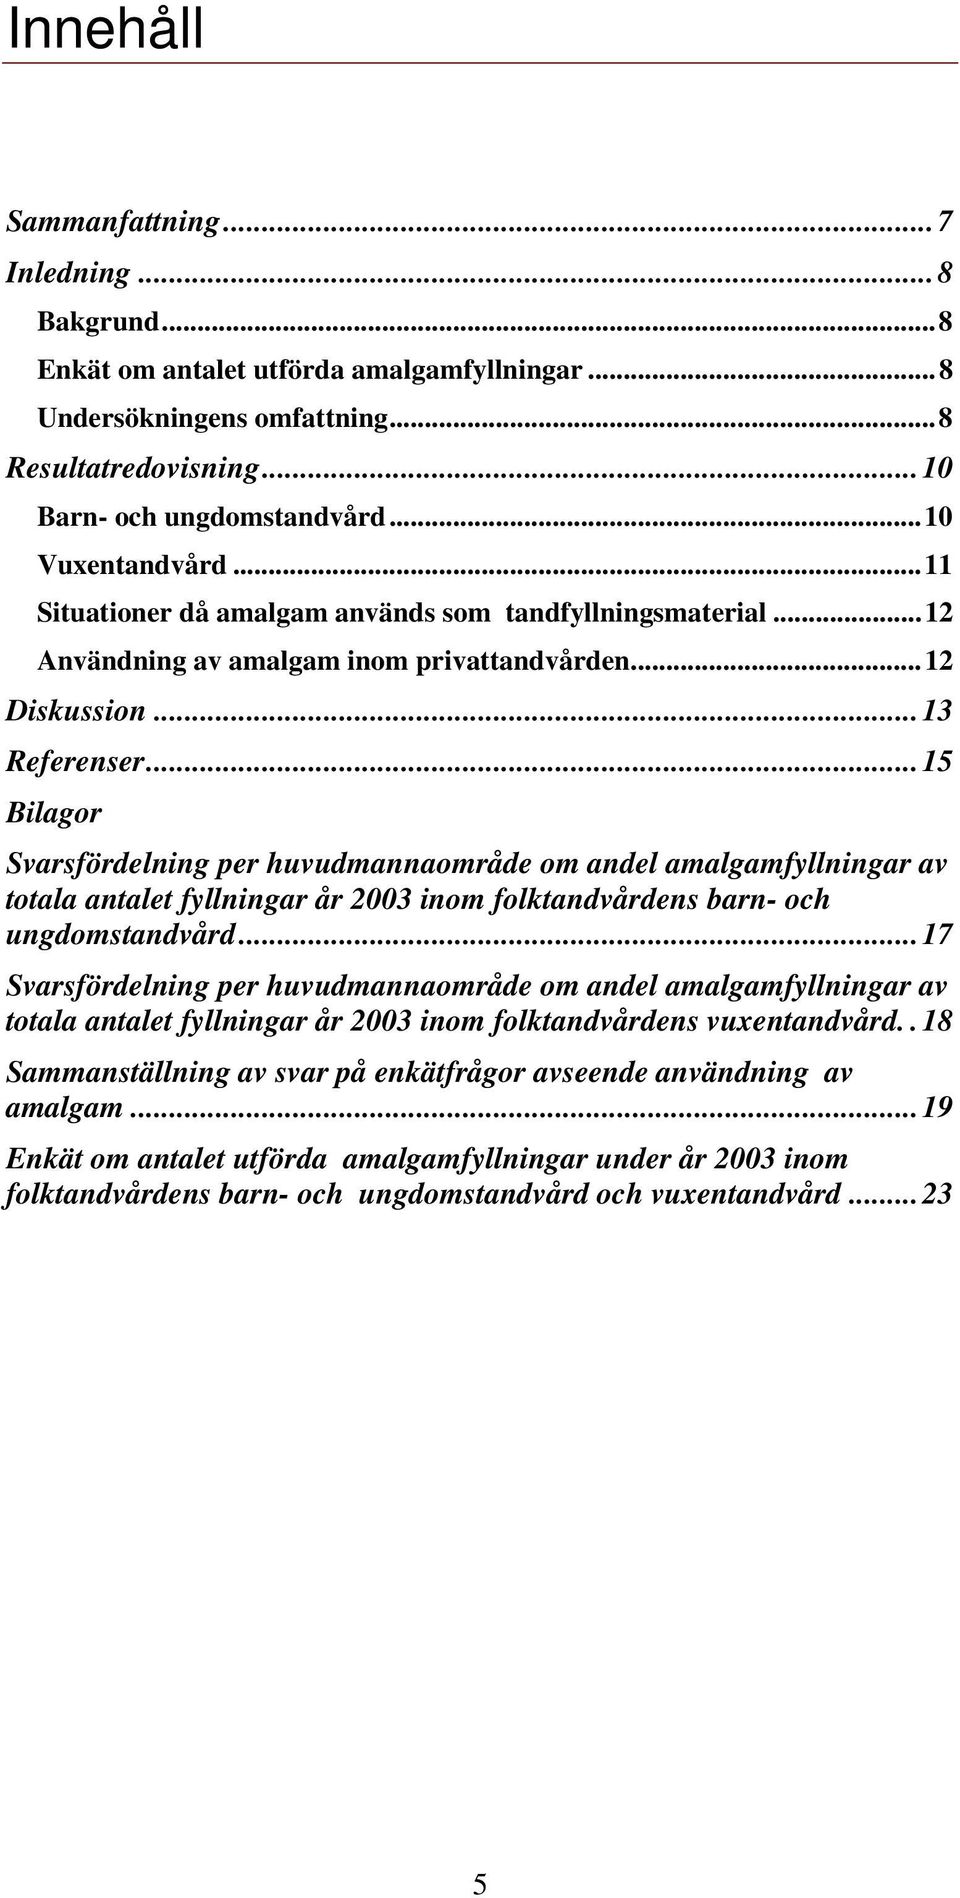 ..15 Bilagor Svarsfördelning per huvudmannaområde om andel amalgamfyllningar av totala antalet fyllningar år 2003 inom folktandvårdens barn- och ungdomstandvård.